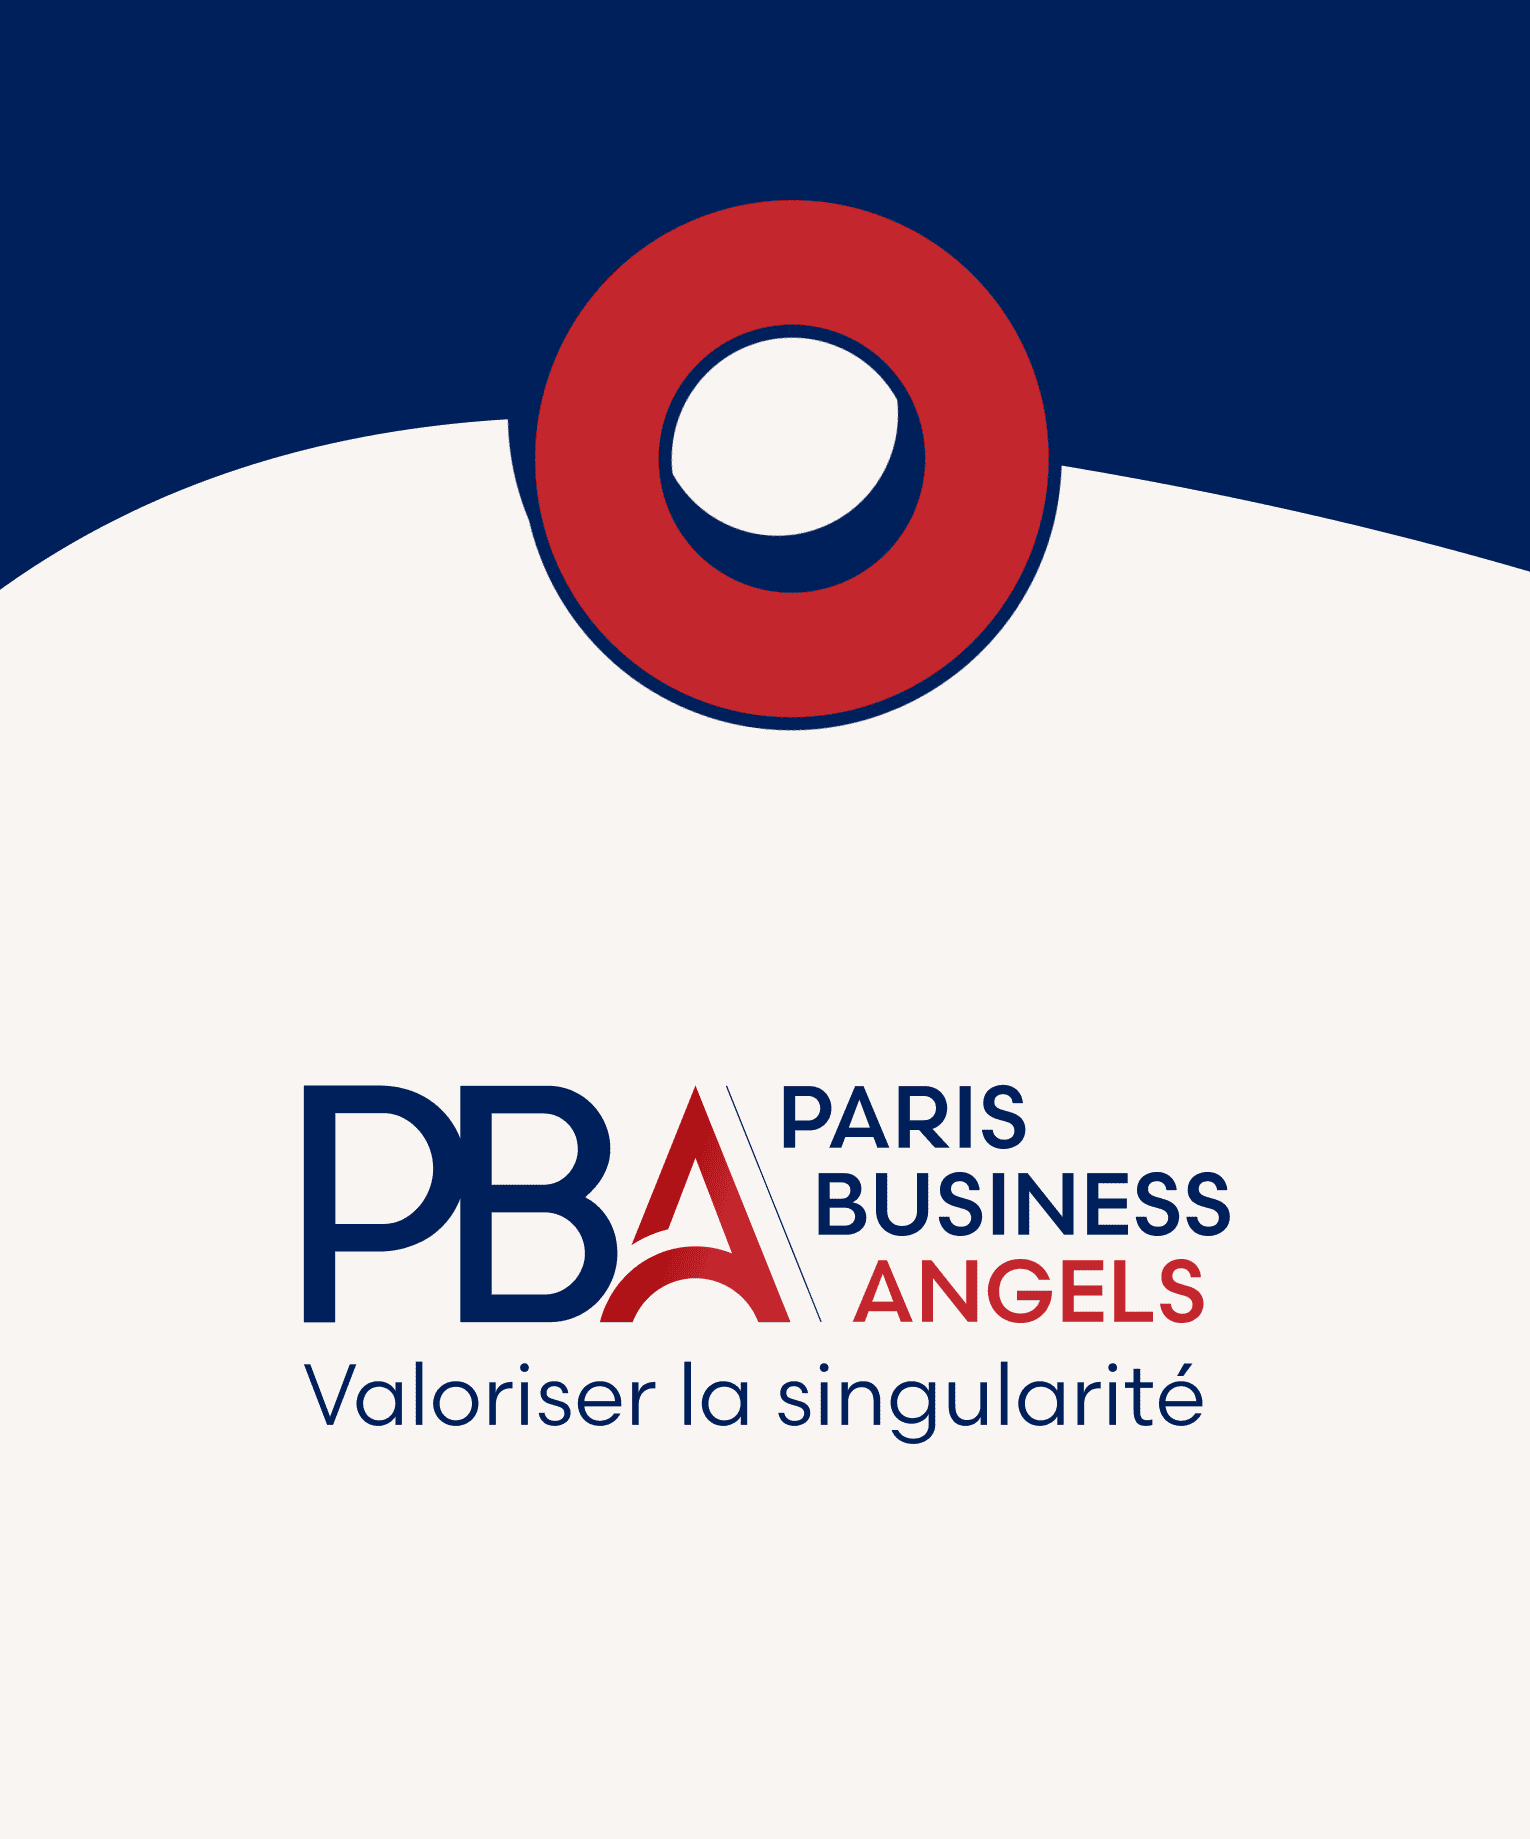 Paris Business Angels (PBA)